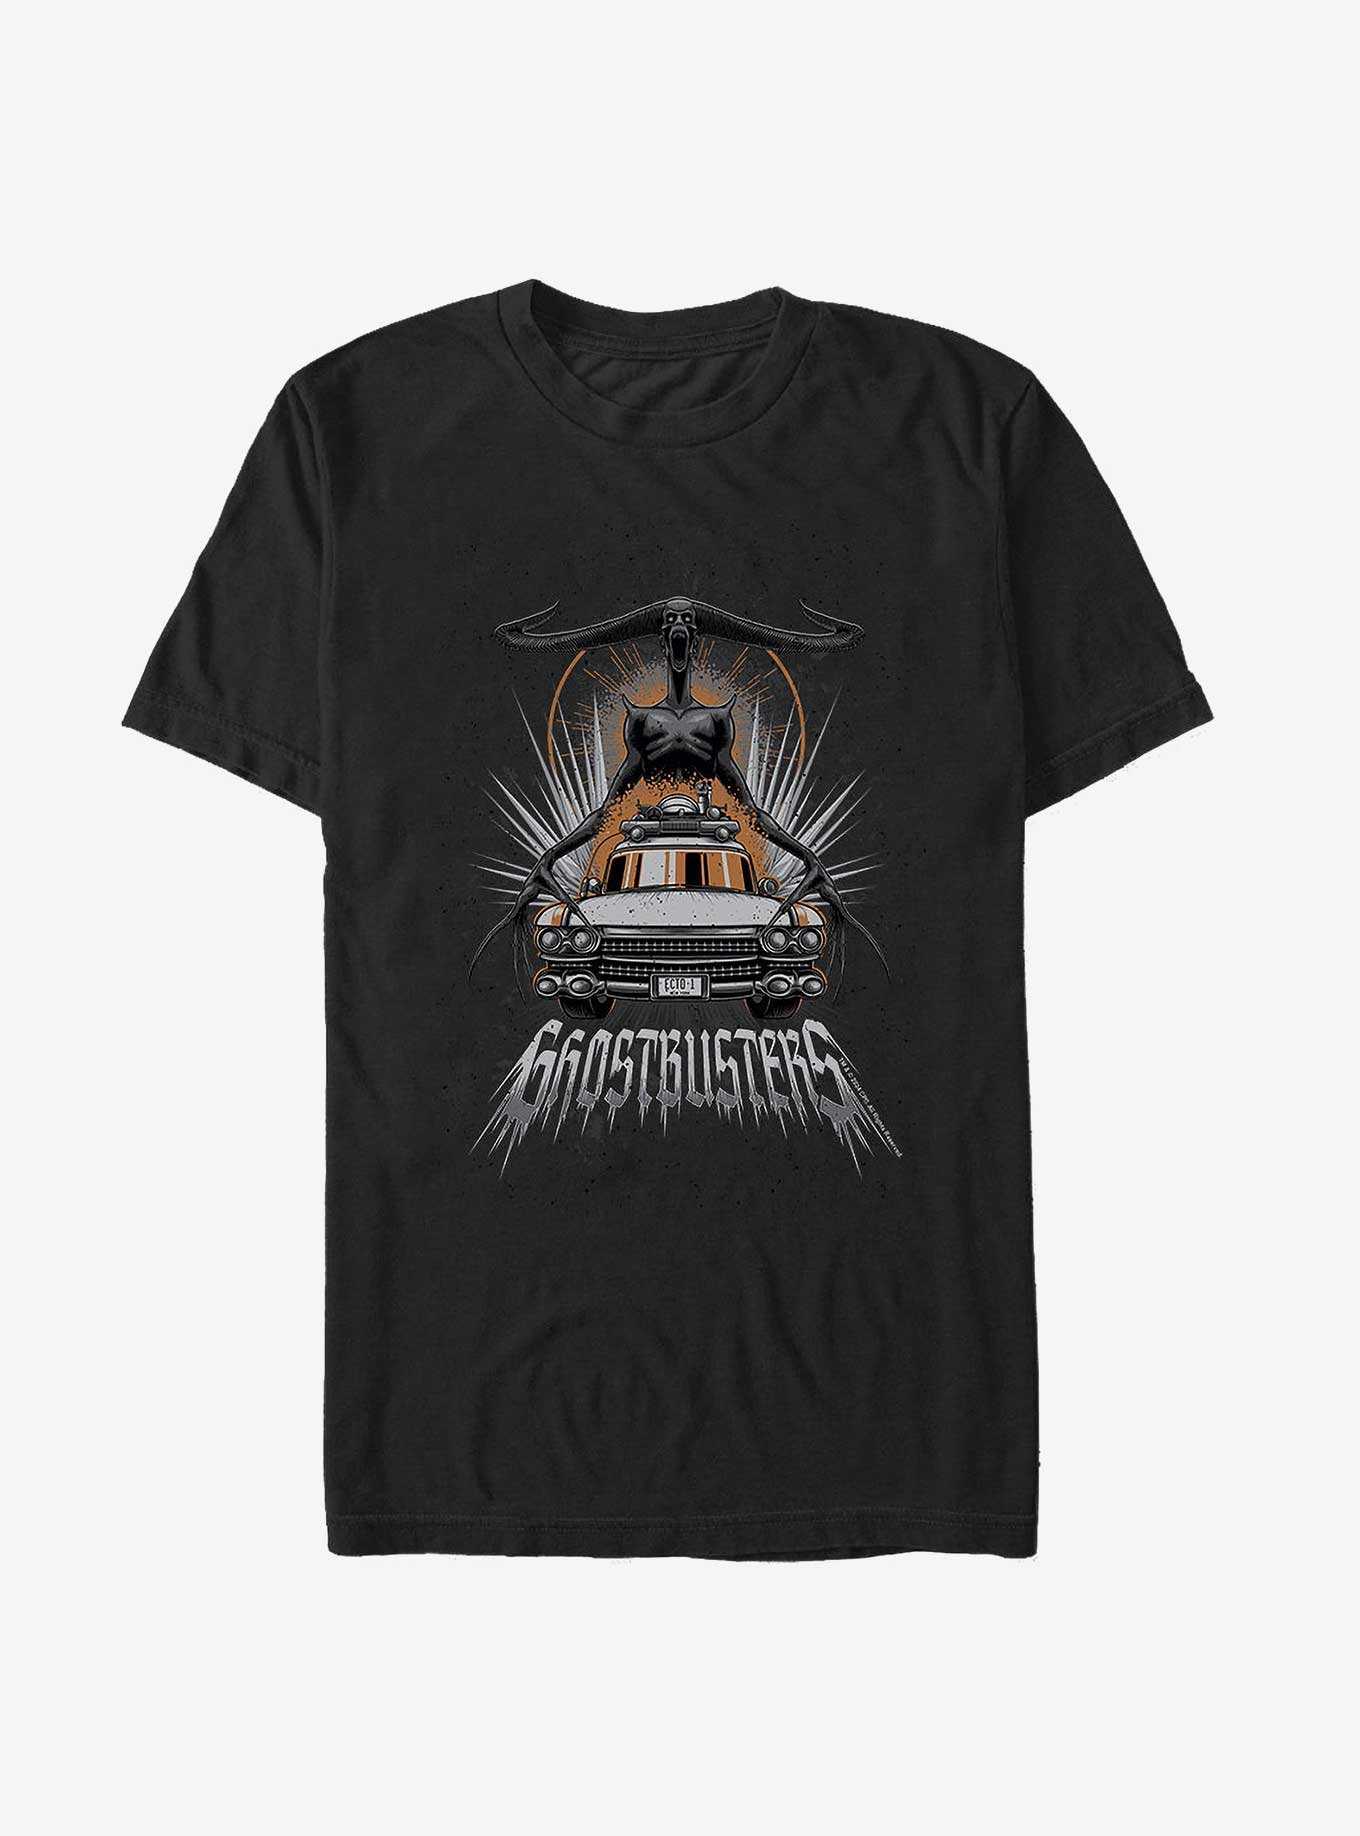 Ghostbusters Tall Dark and Horny at 12 o'clock T-Shirt, , hi-res